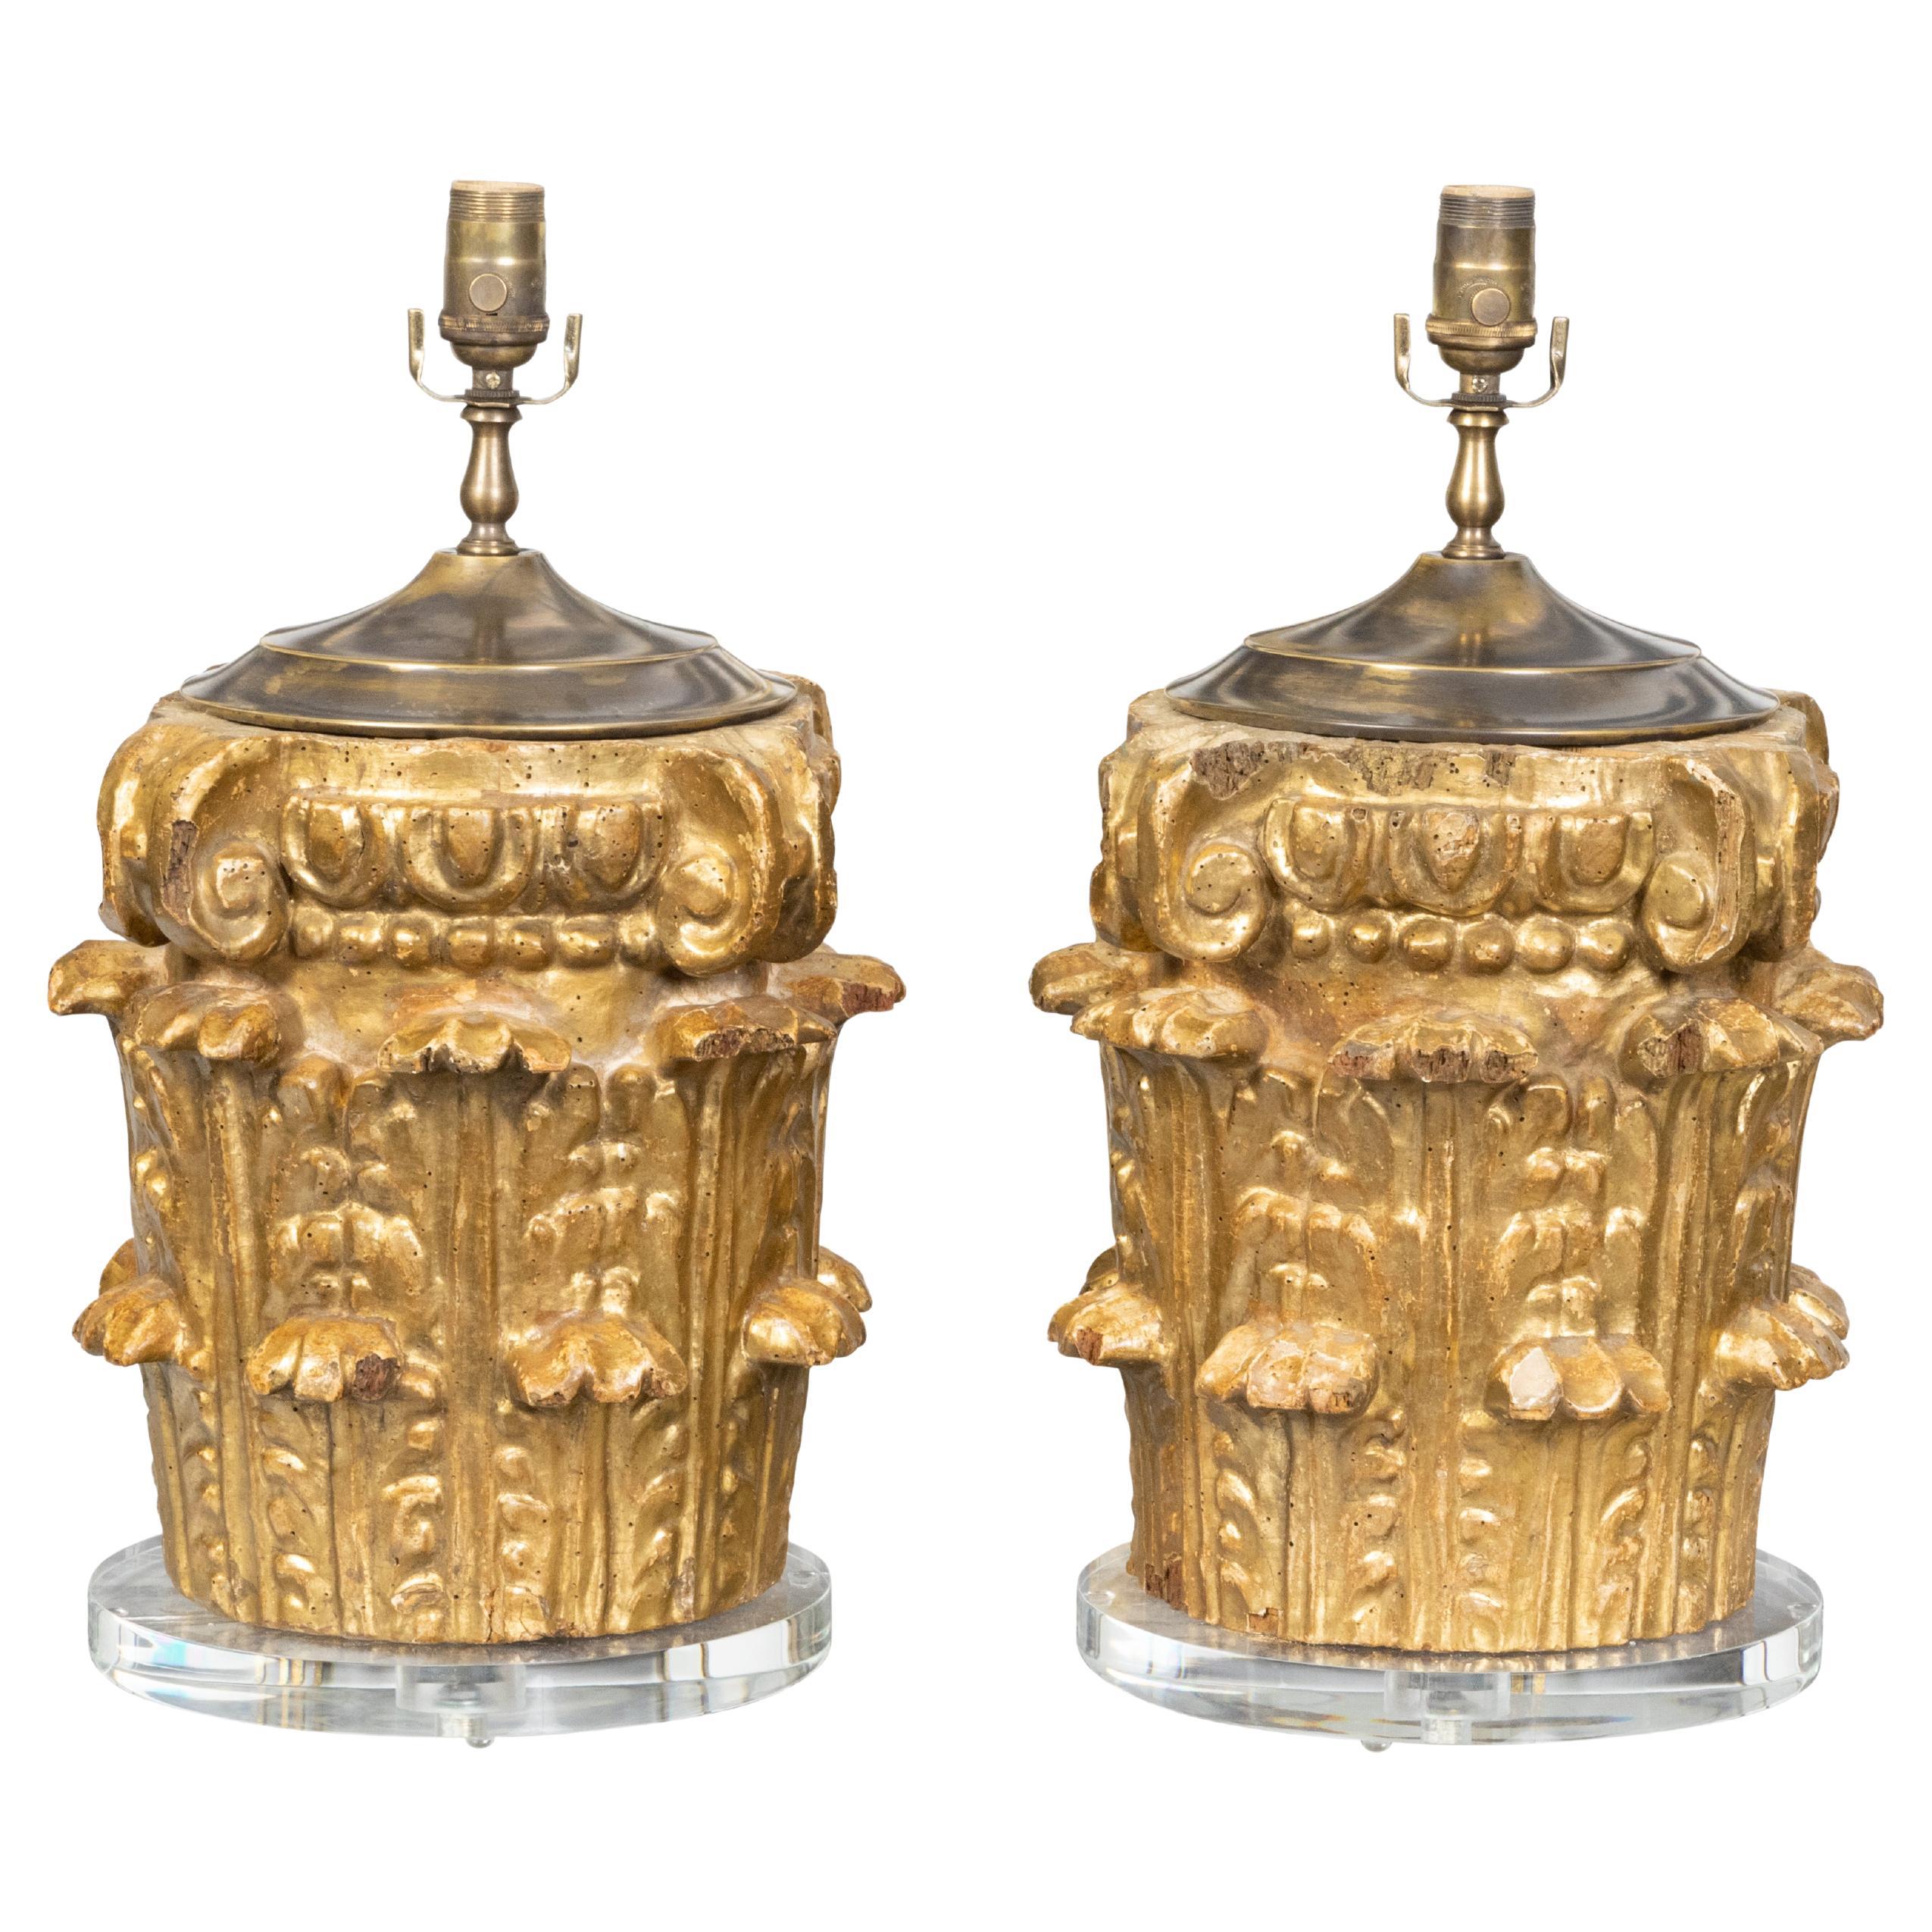 Capitales composites italiennes en bois doré sculpté du 19ème siècle transformées en lampes de bureau